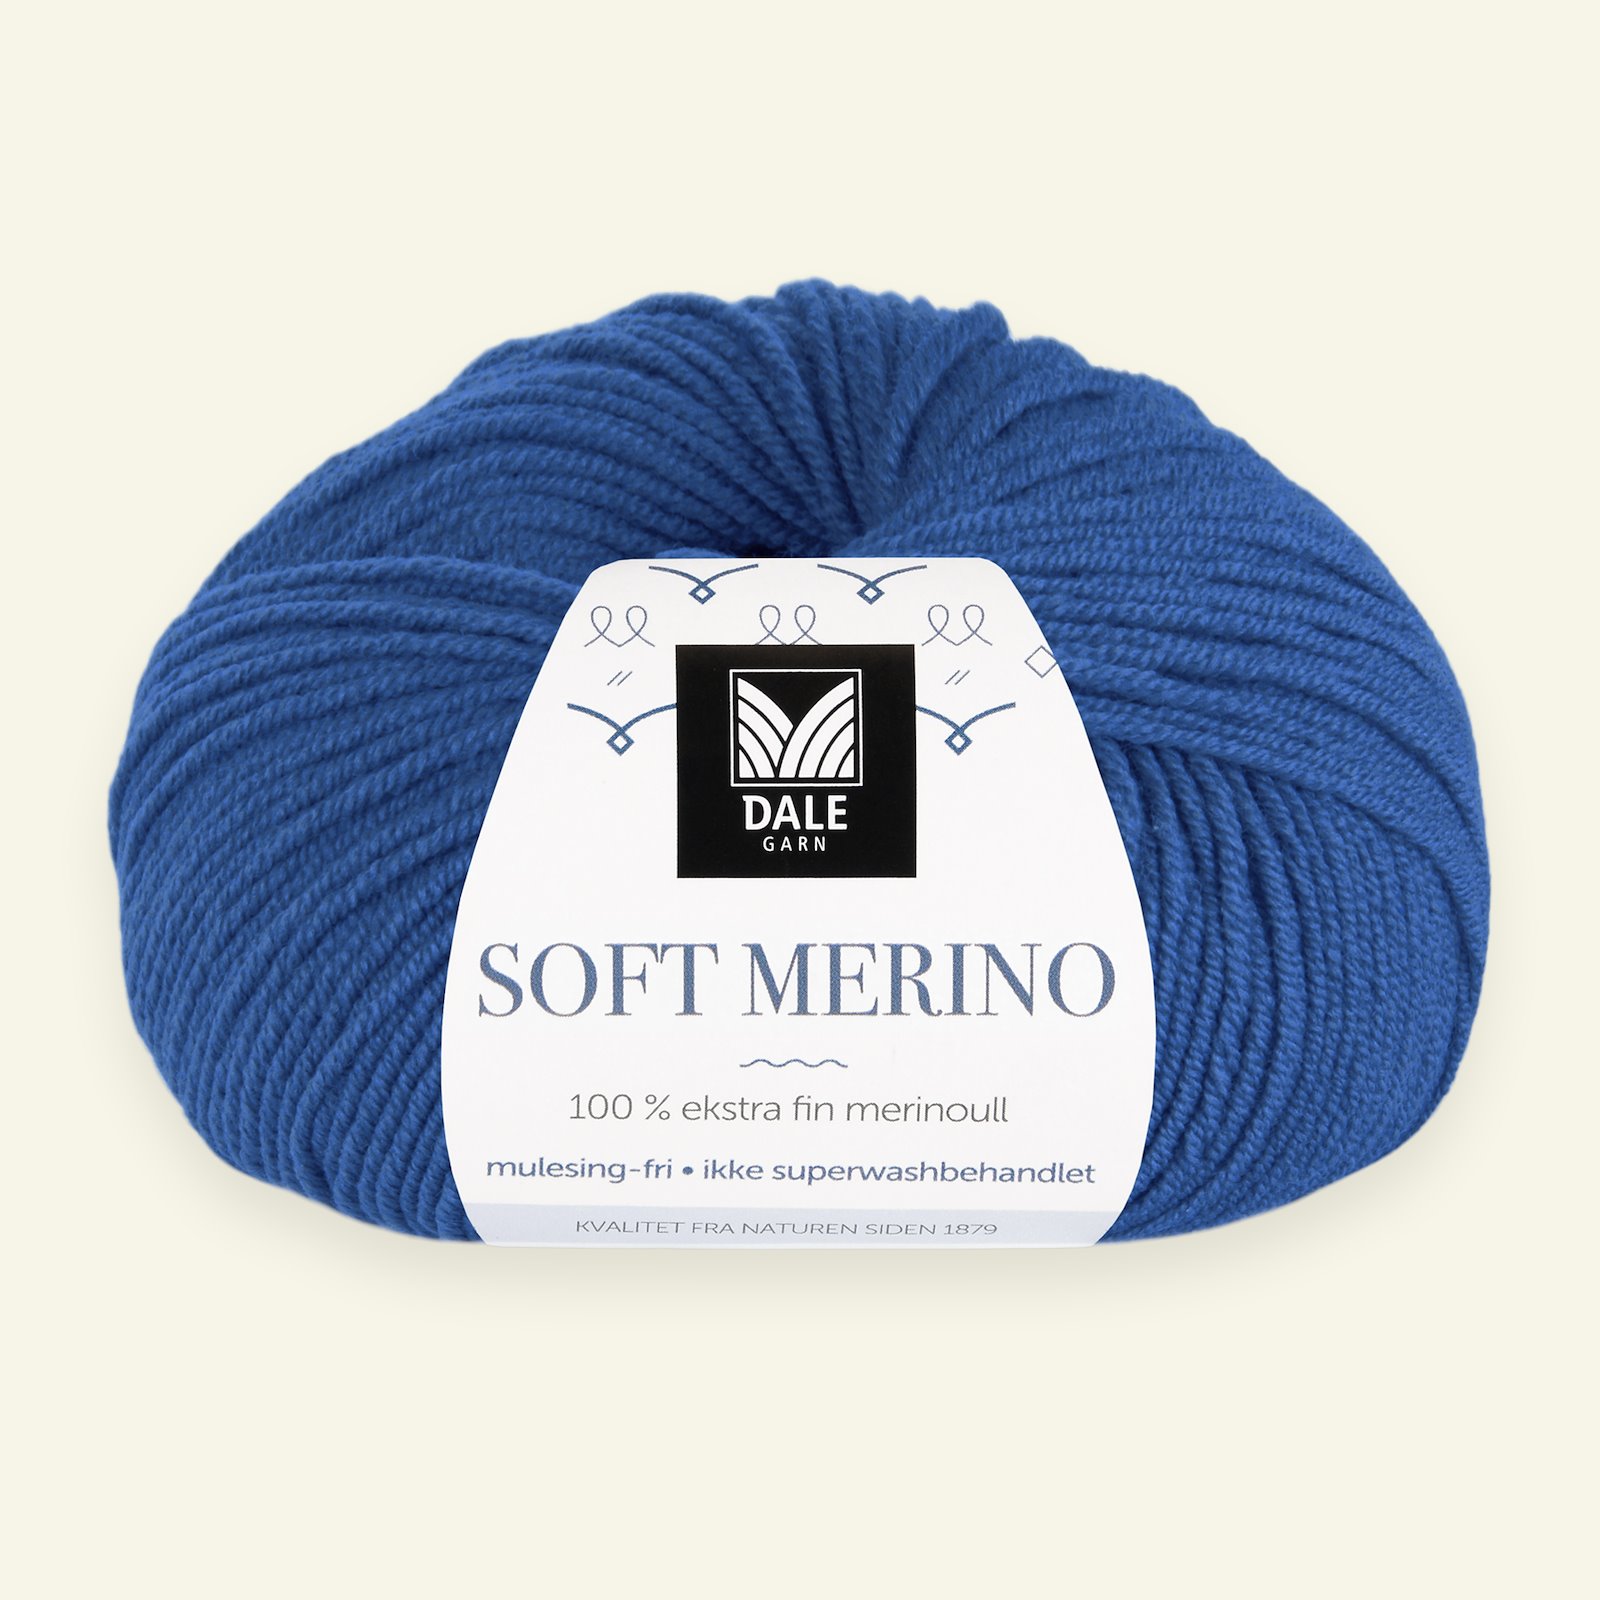 Dale Garn, 100% ekstra fint merinogarn "Soft Merino", Klar blå 90000343_pack